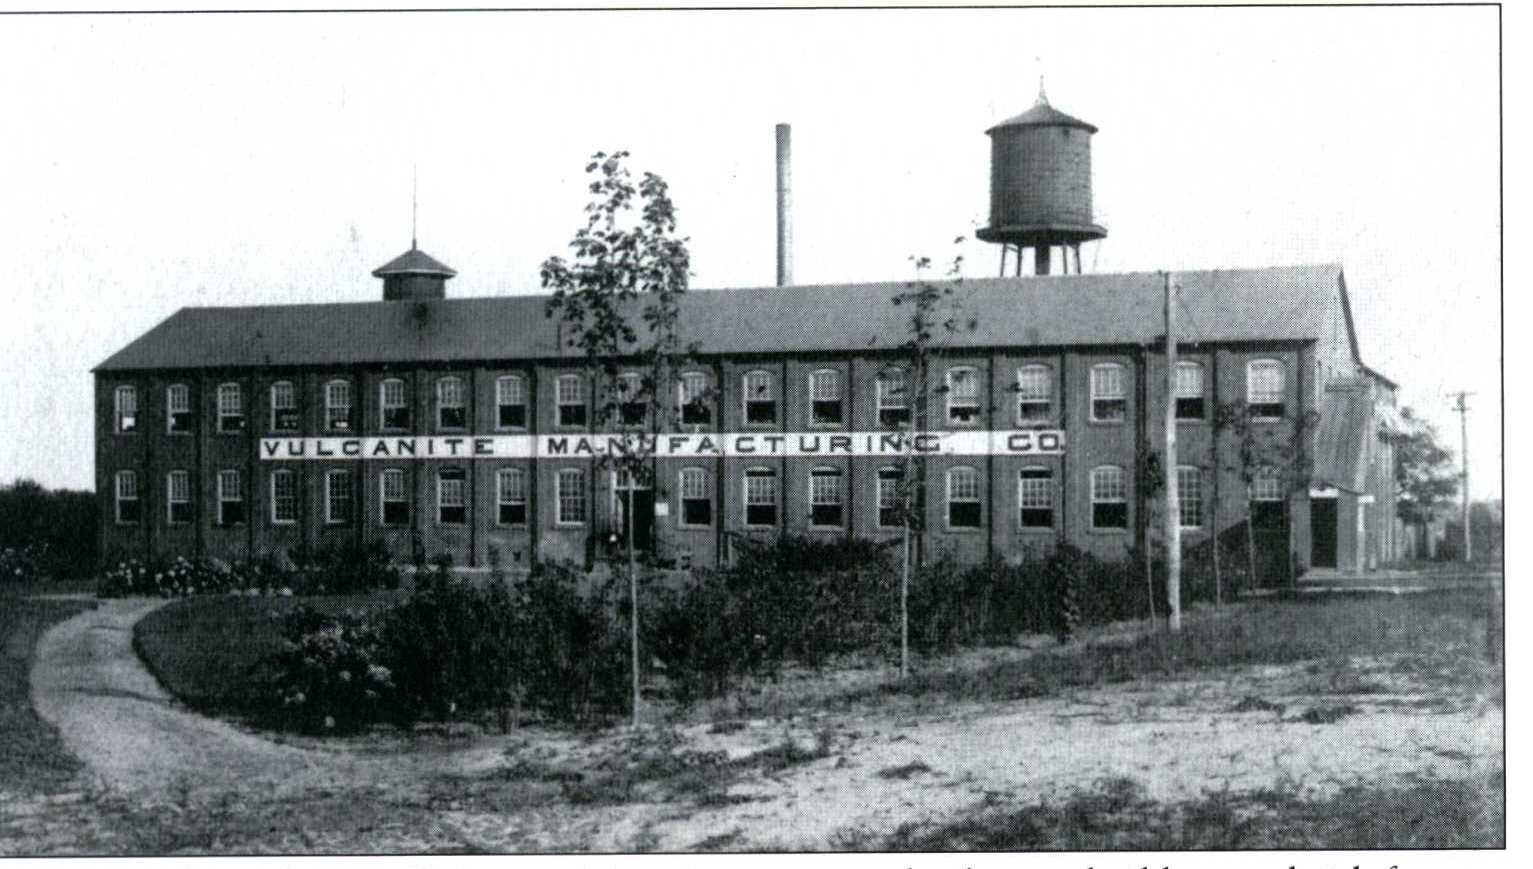 Vulcanite Factory